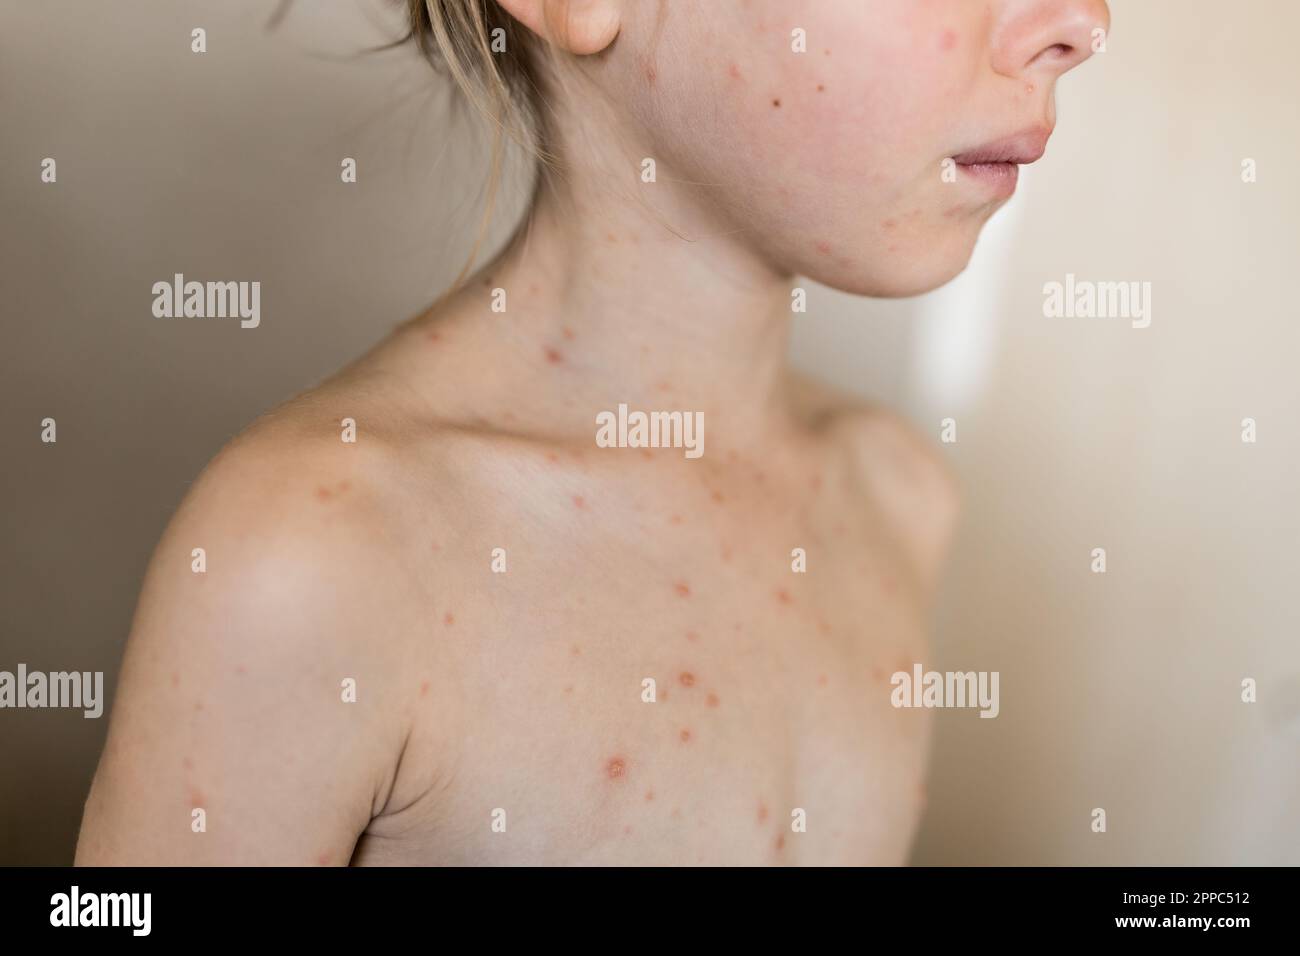 Varicelle, virus de la varicelle ou éruption vésiculaire sur le corps et le visage de la petite fille. Gros plan Portrait d'enfant avec boutons rouges. Visage masqué de l'enfant Banque D'Images